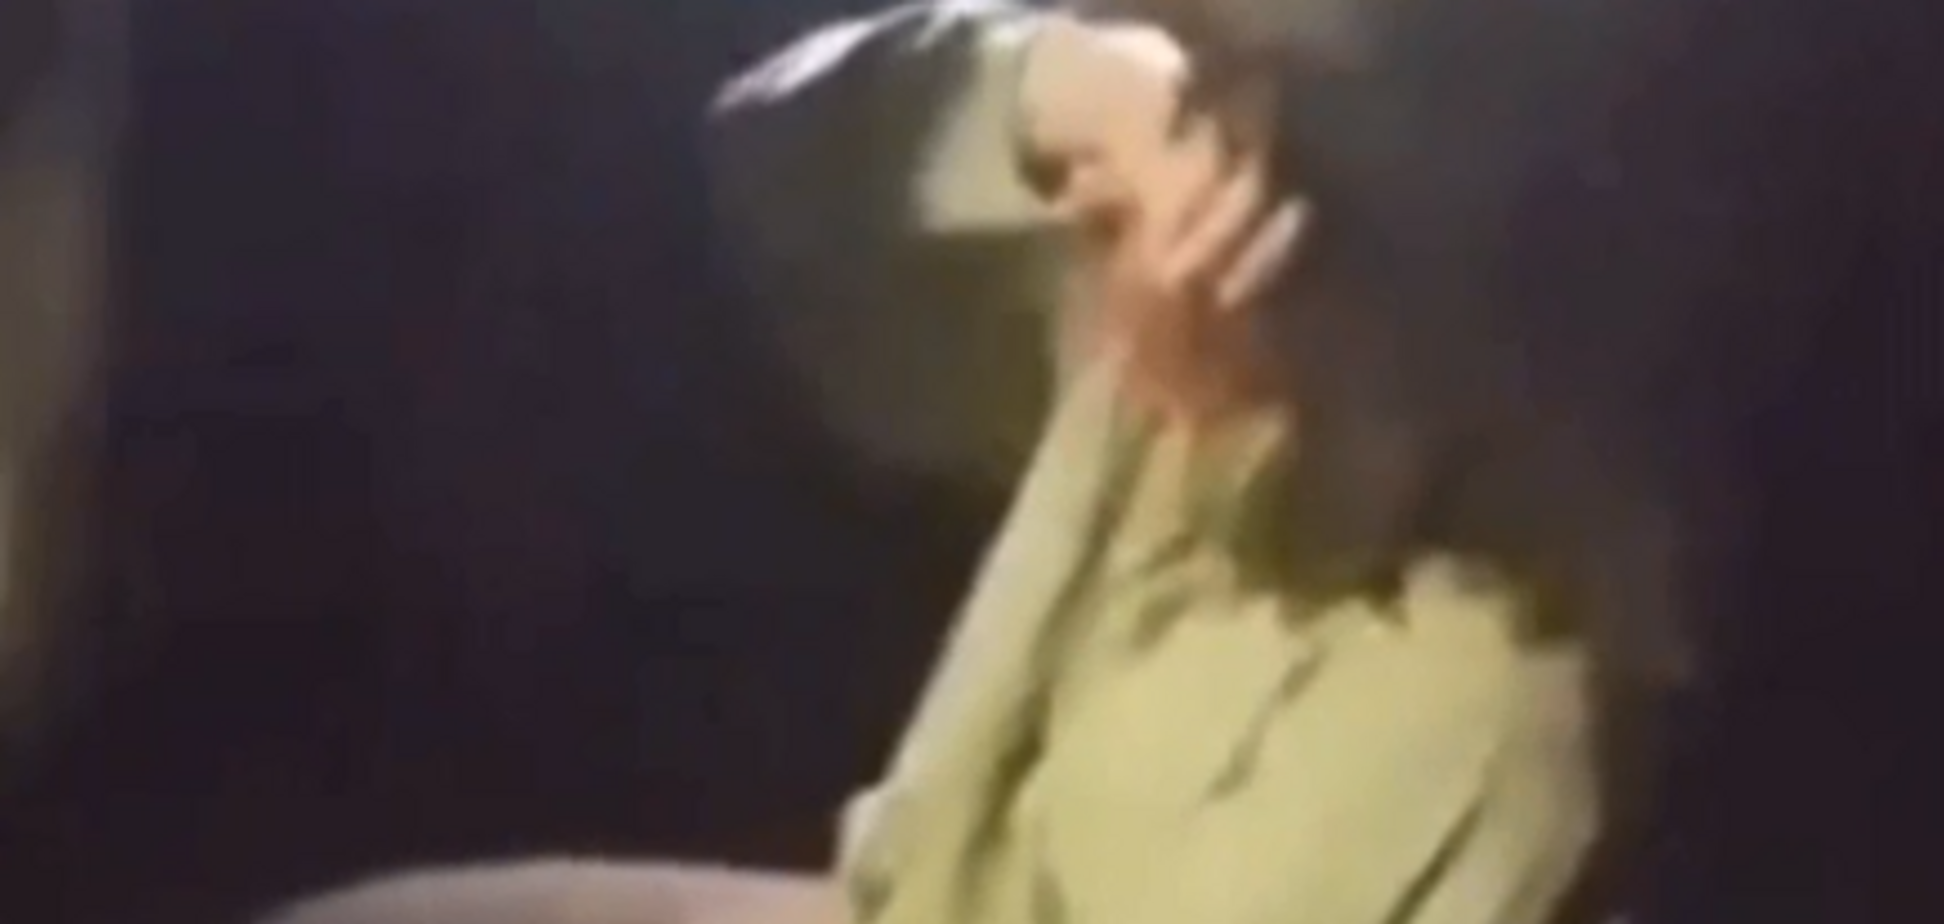 У Запоріжжі натовп підлітків по-звірячому побив двох дівчат. Відео 18+